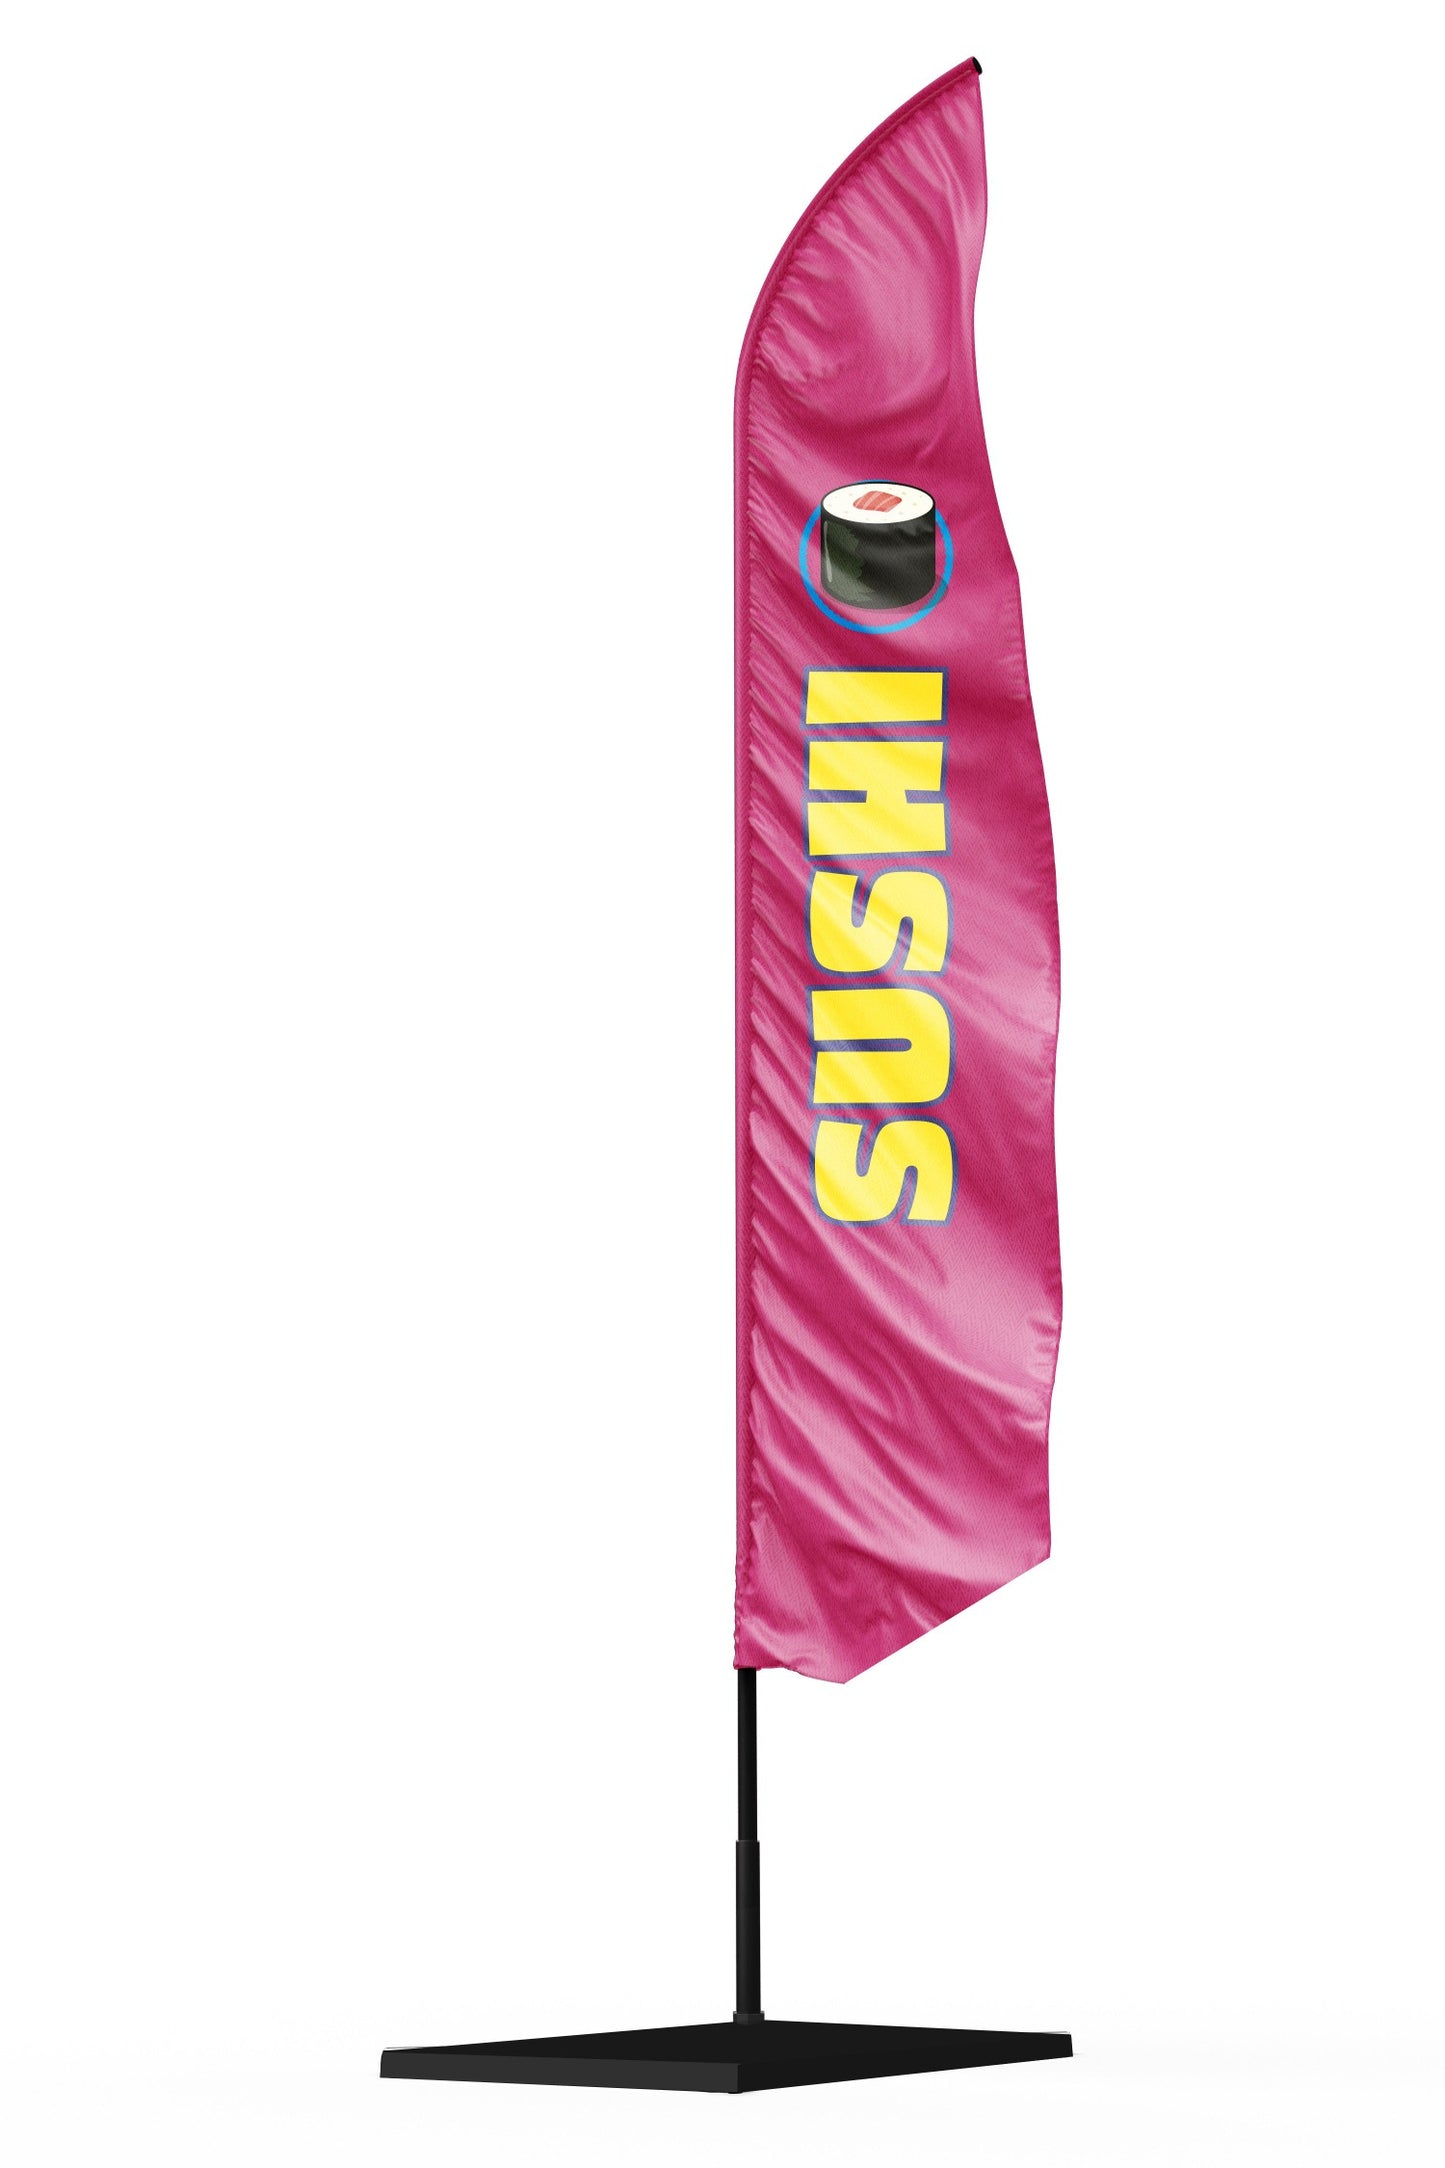 Drapeau oriflamme publicitaire SUSHI fond rose avec une écriture jaune et un maki sushi en haut du drapeau